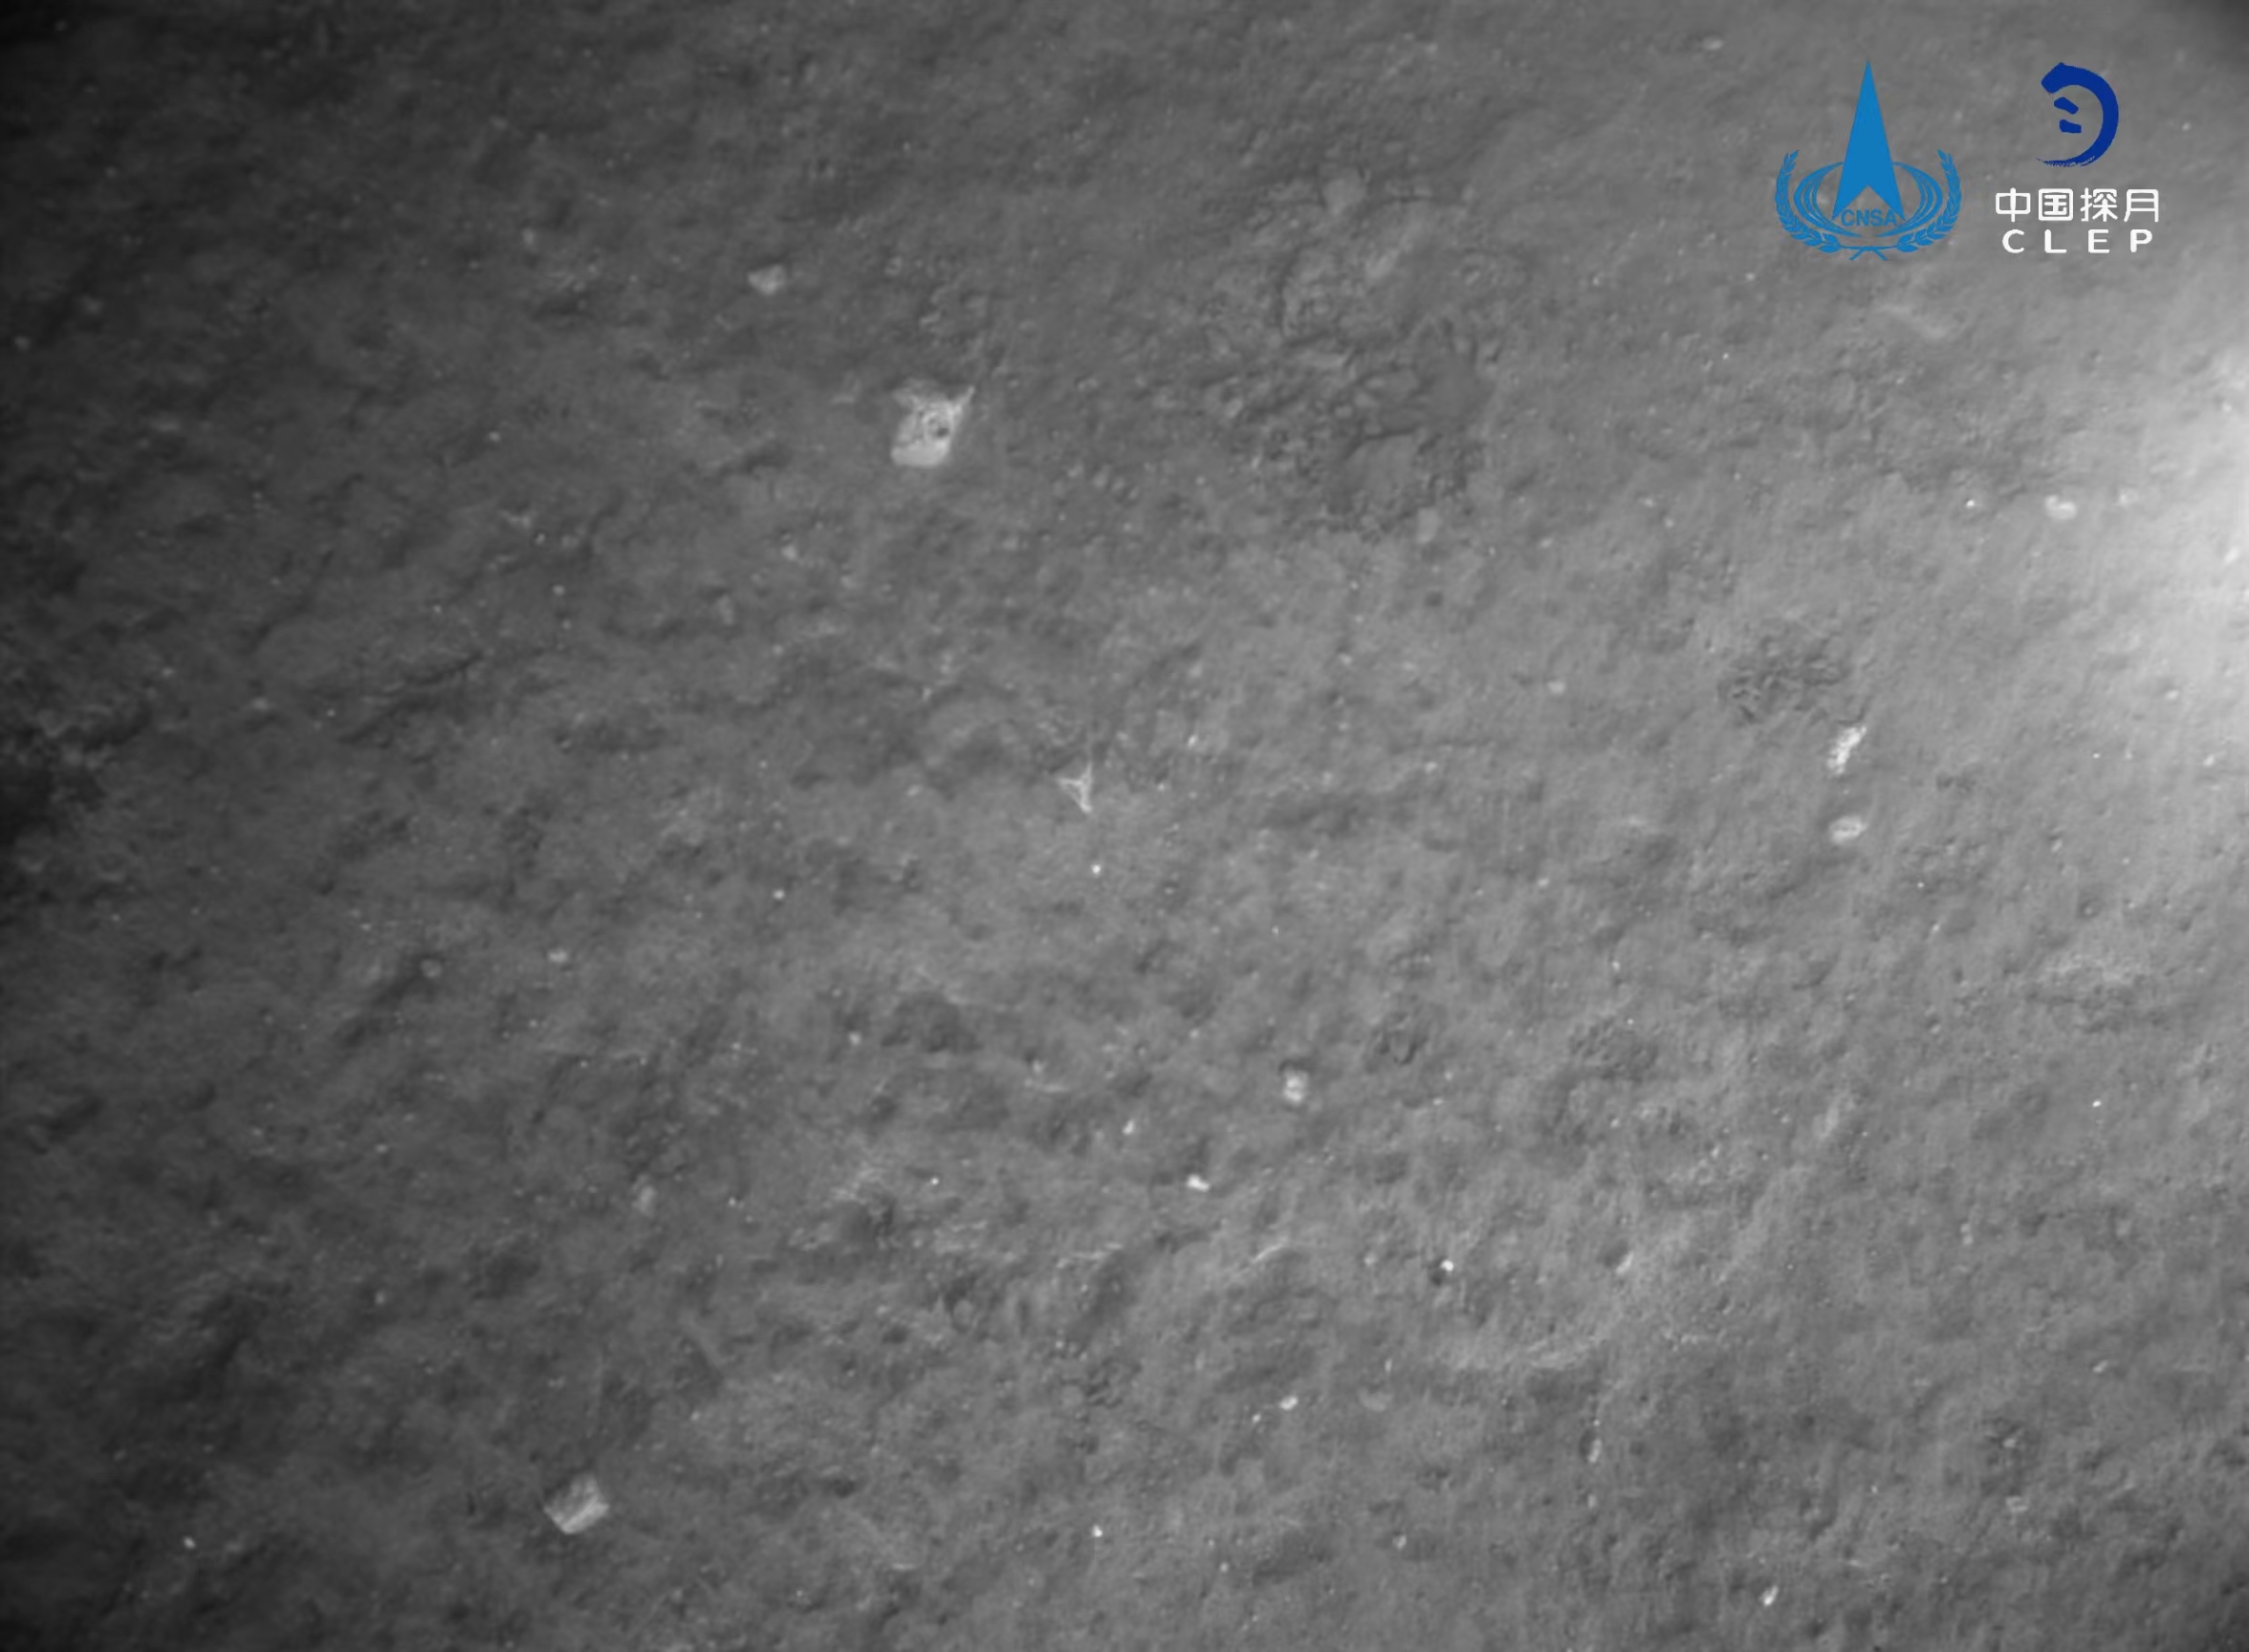 该图由降落相机在着陆器安全着陆后拍摄，嫦娥对着陆点北侧月面拍摄的号拍彩色图像镶嵌制作而成。<p style=